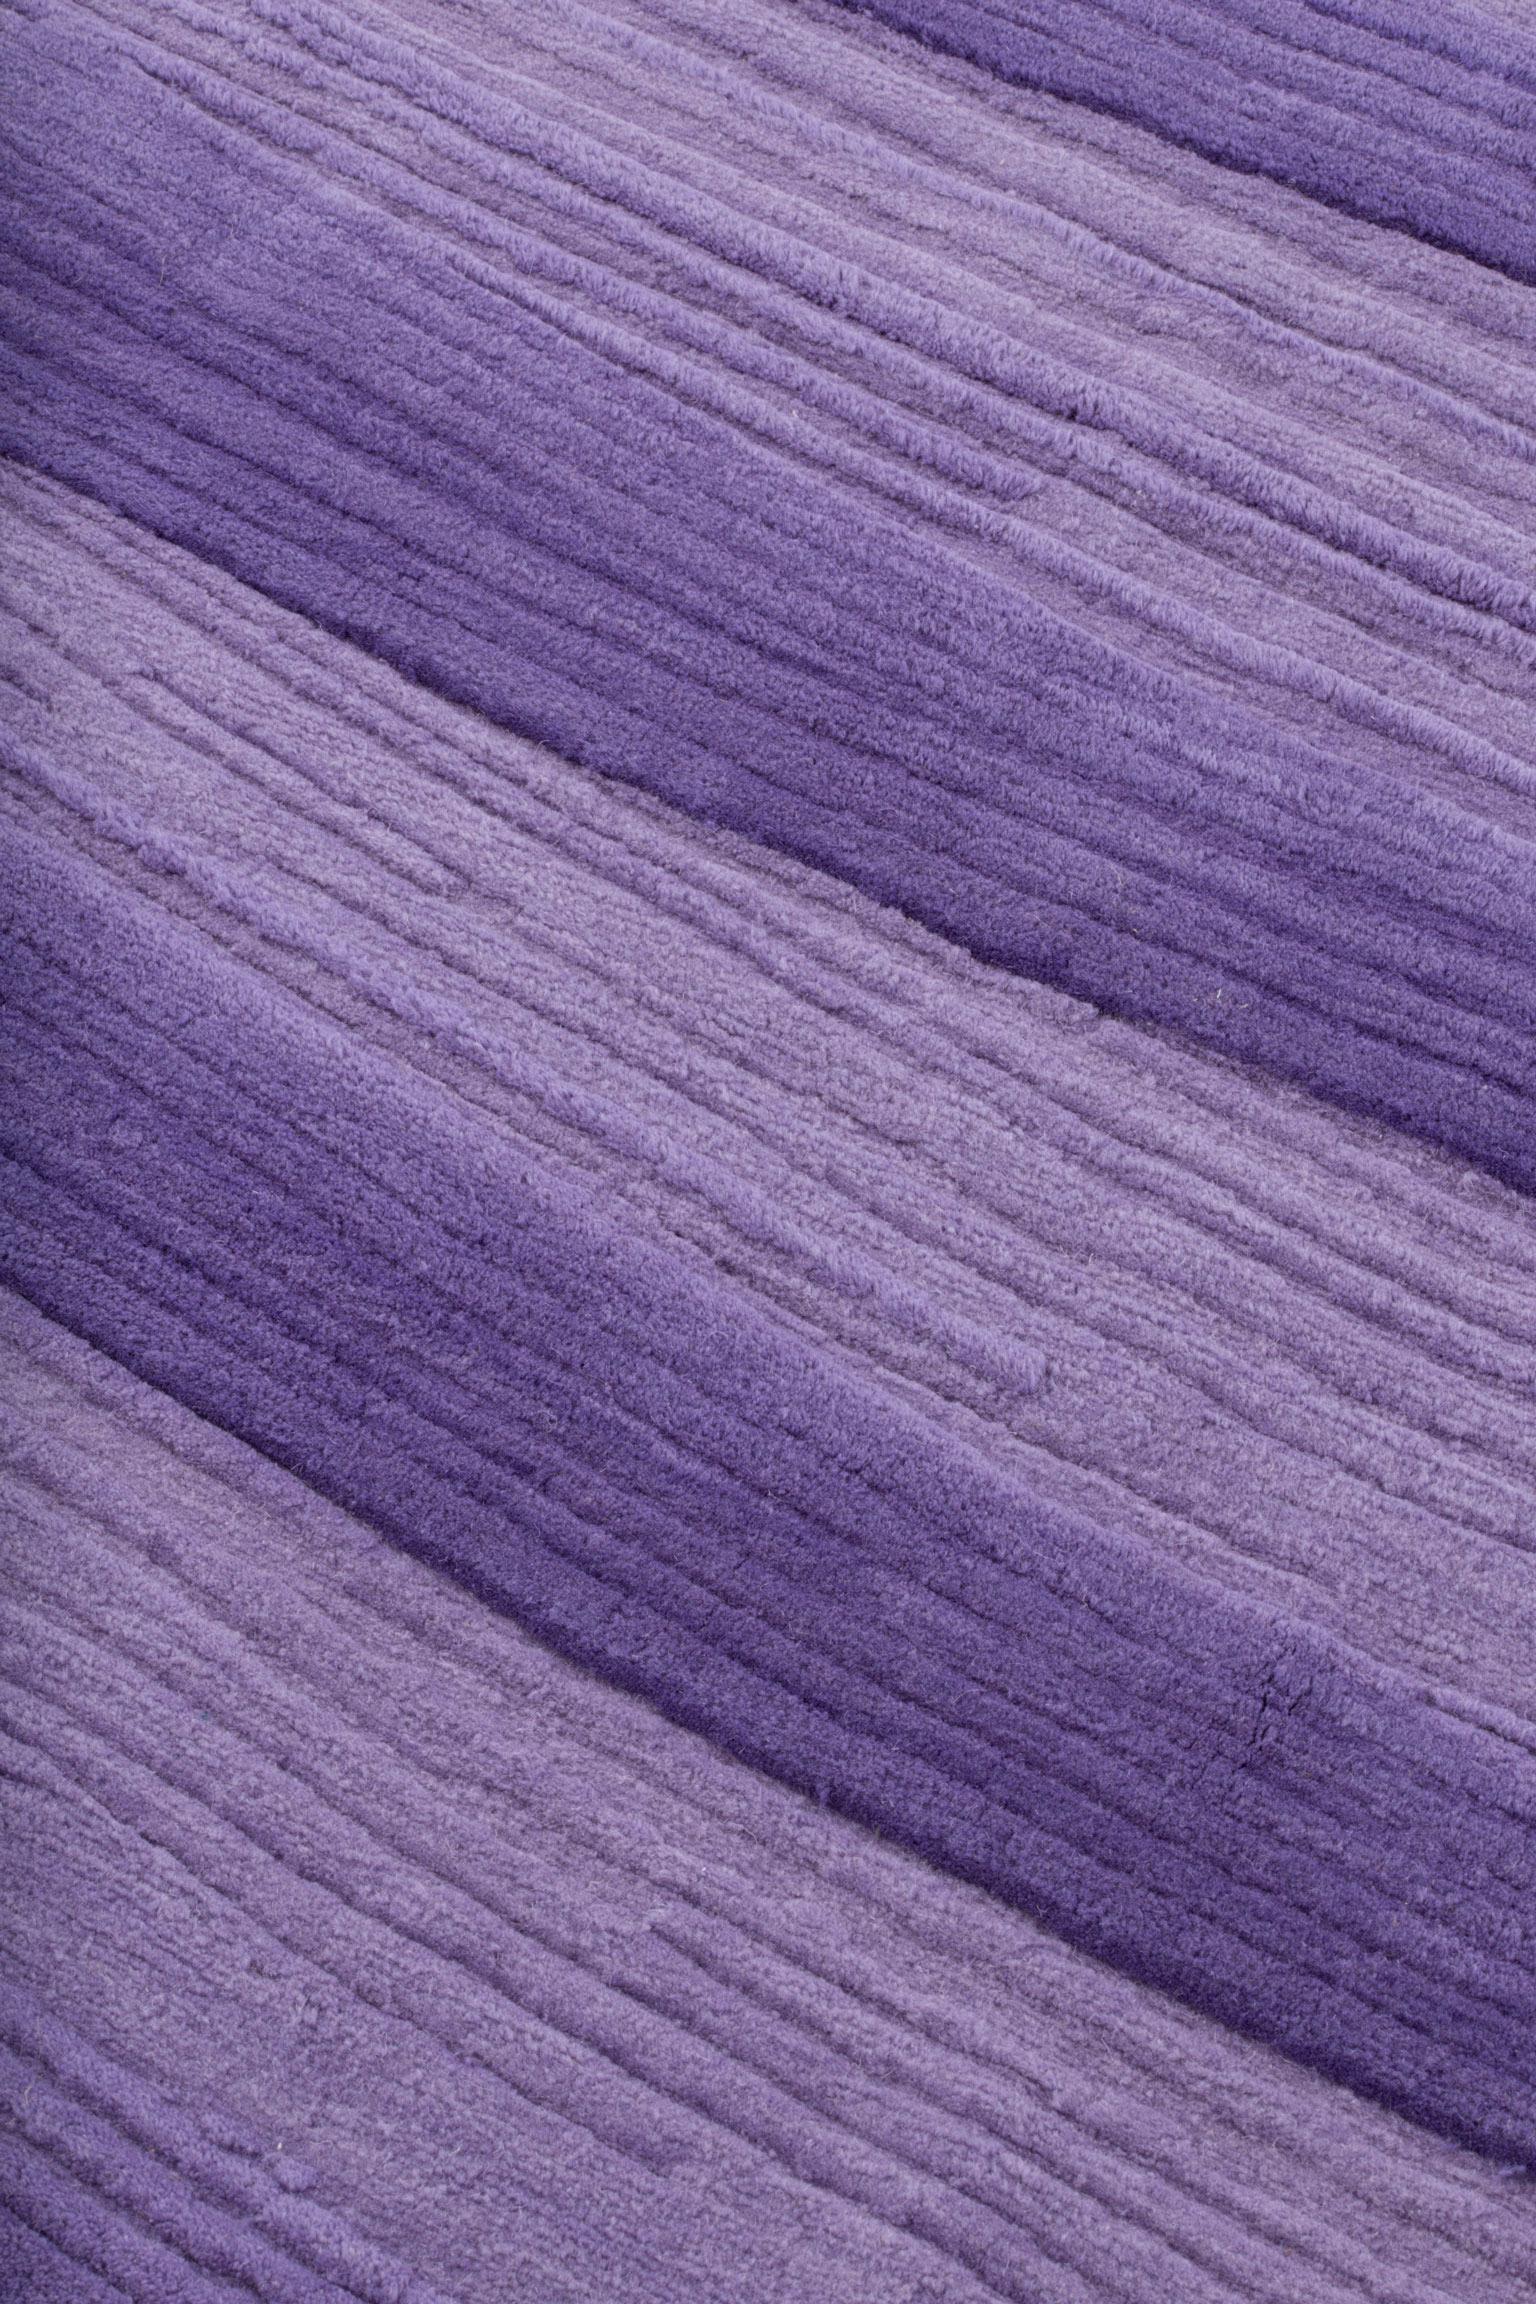 Modern Gesture cc-tapis Stroke 1.0 Handmade Violet Rug in Wool by Sabine Marcelis For Sale